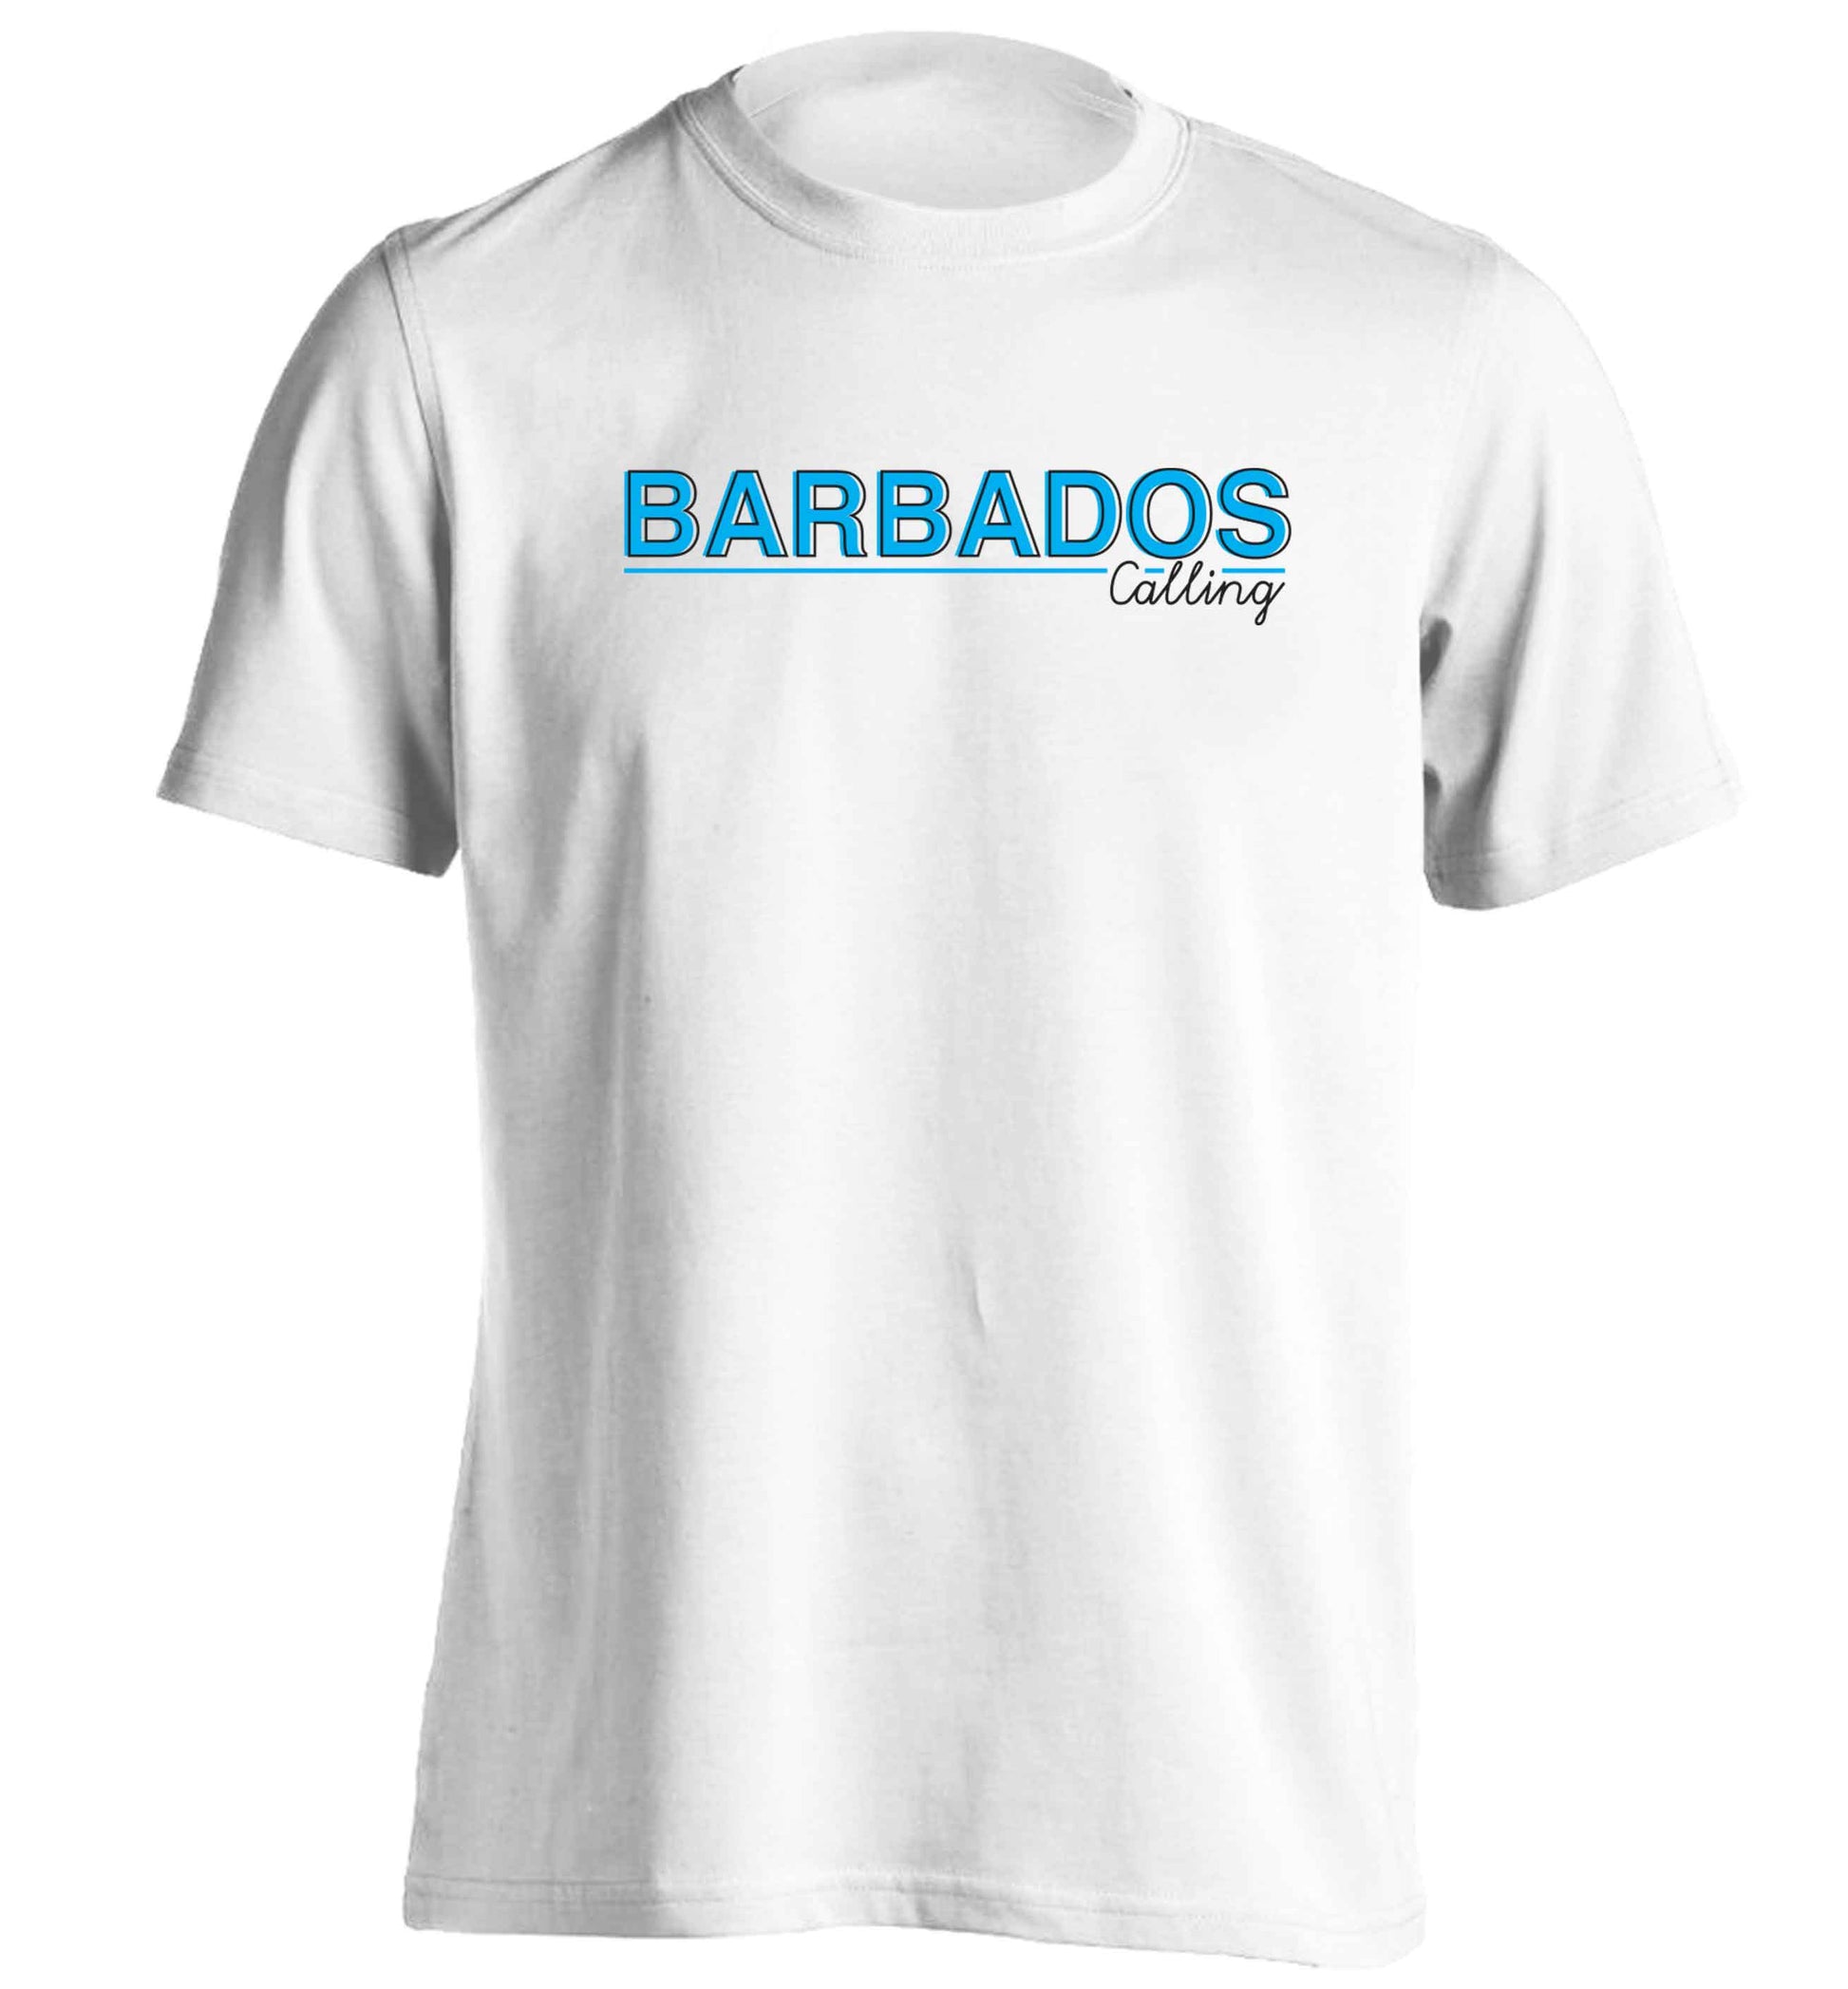 Barbados calling adults unisex white Tshirt 2XL